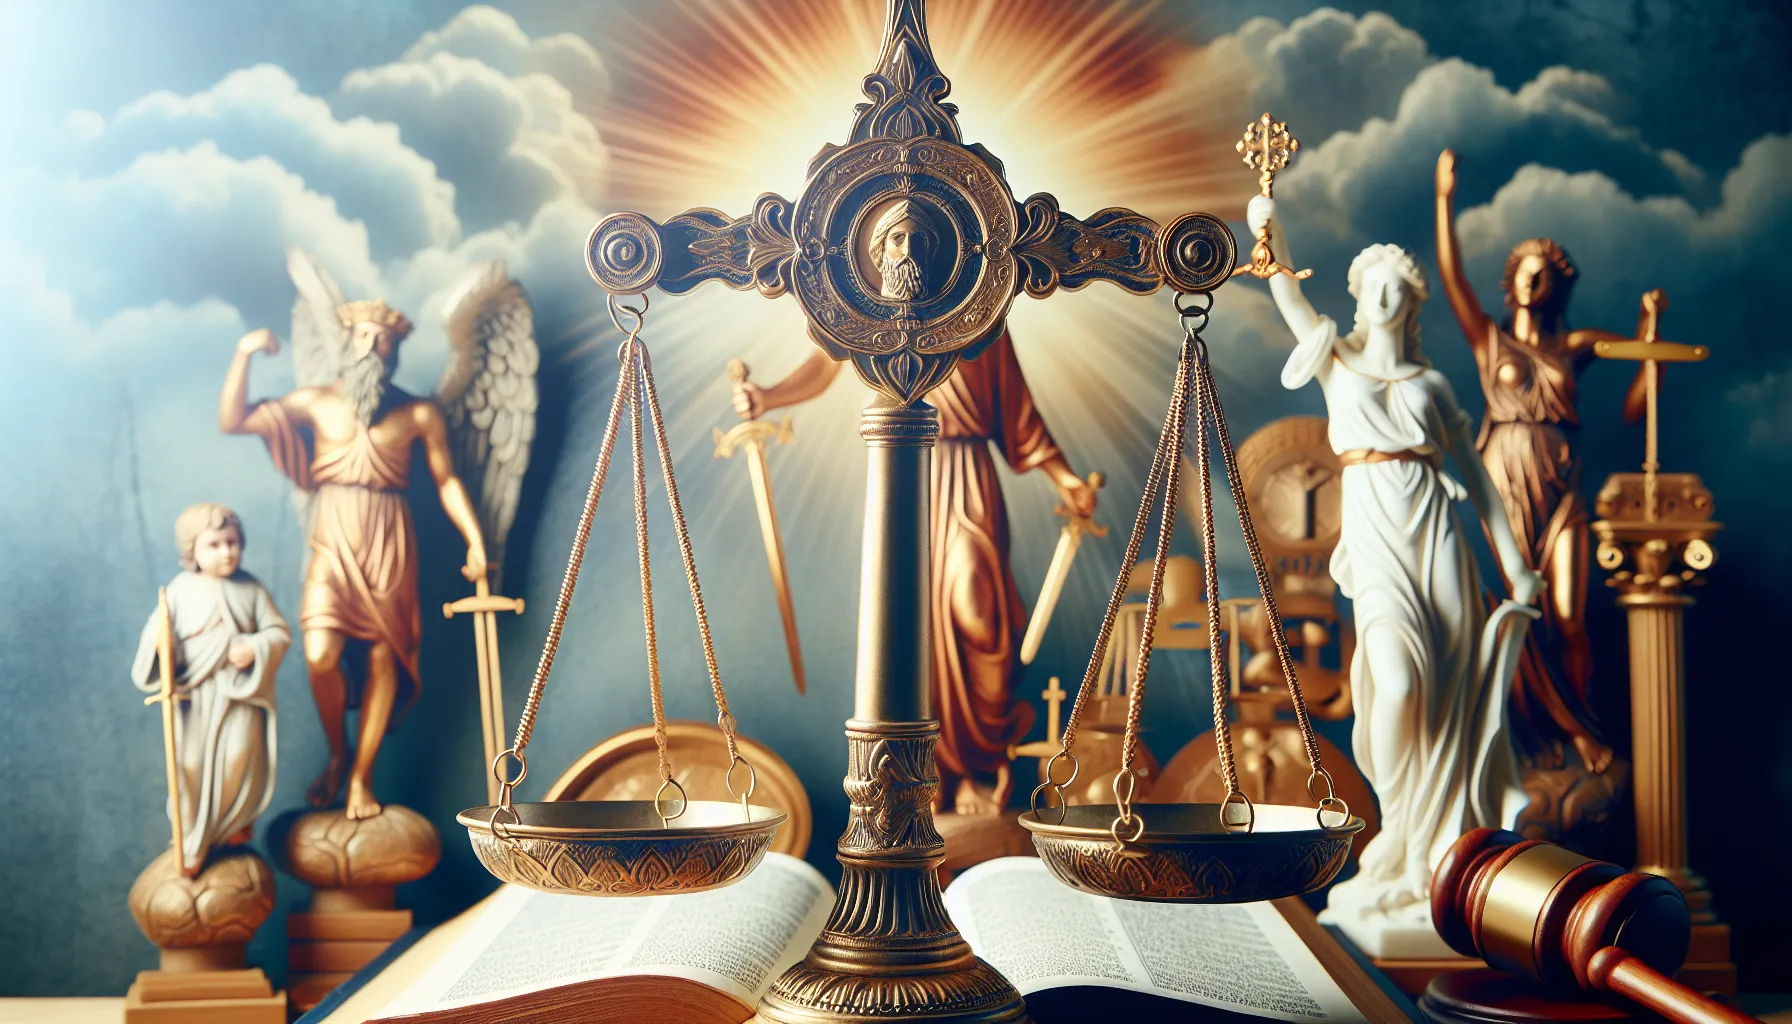 Imagen ilustrativa de la relación entre la justicia divina y la equidad en la fe